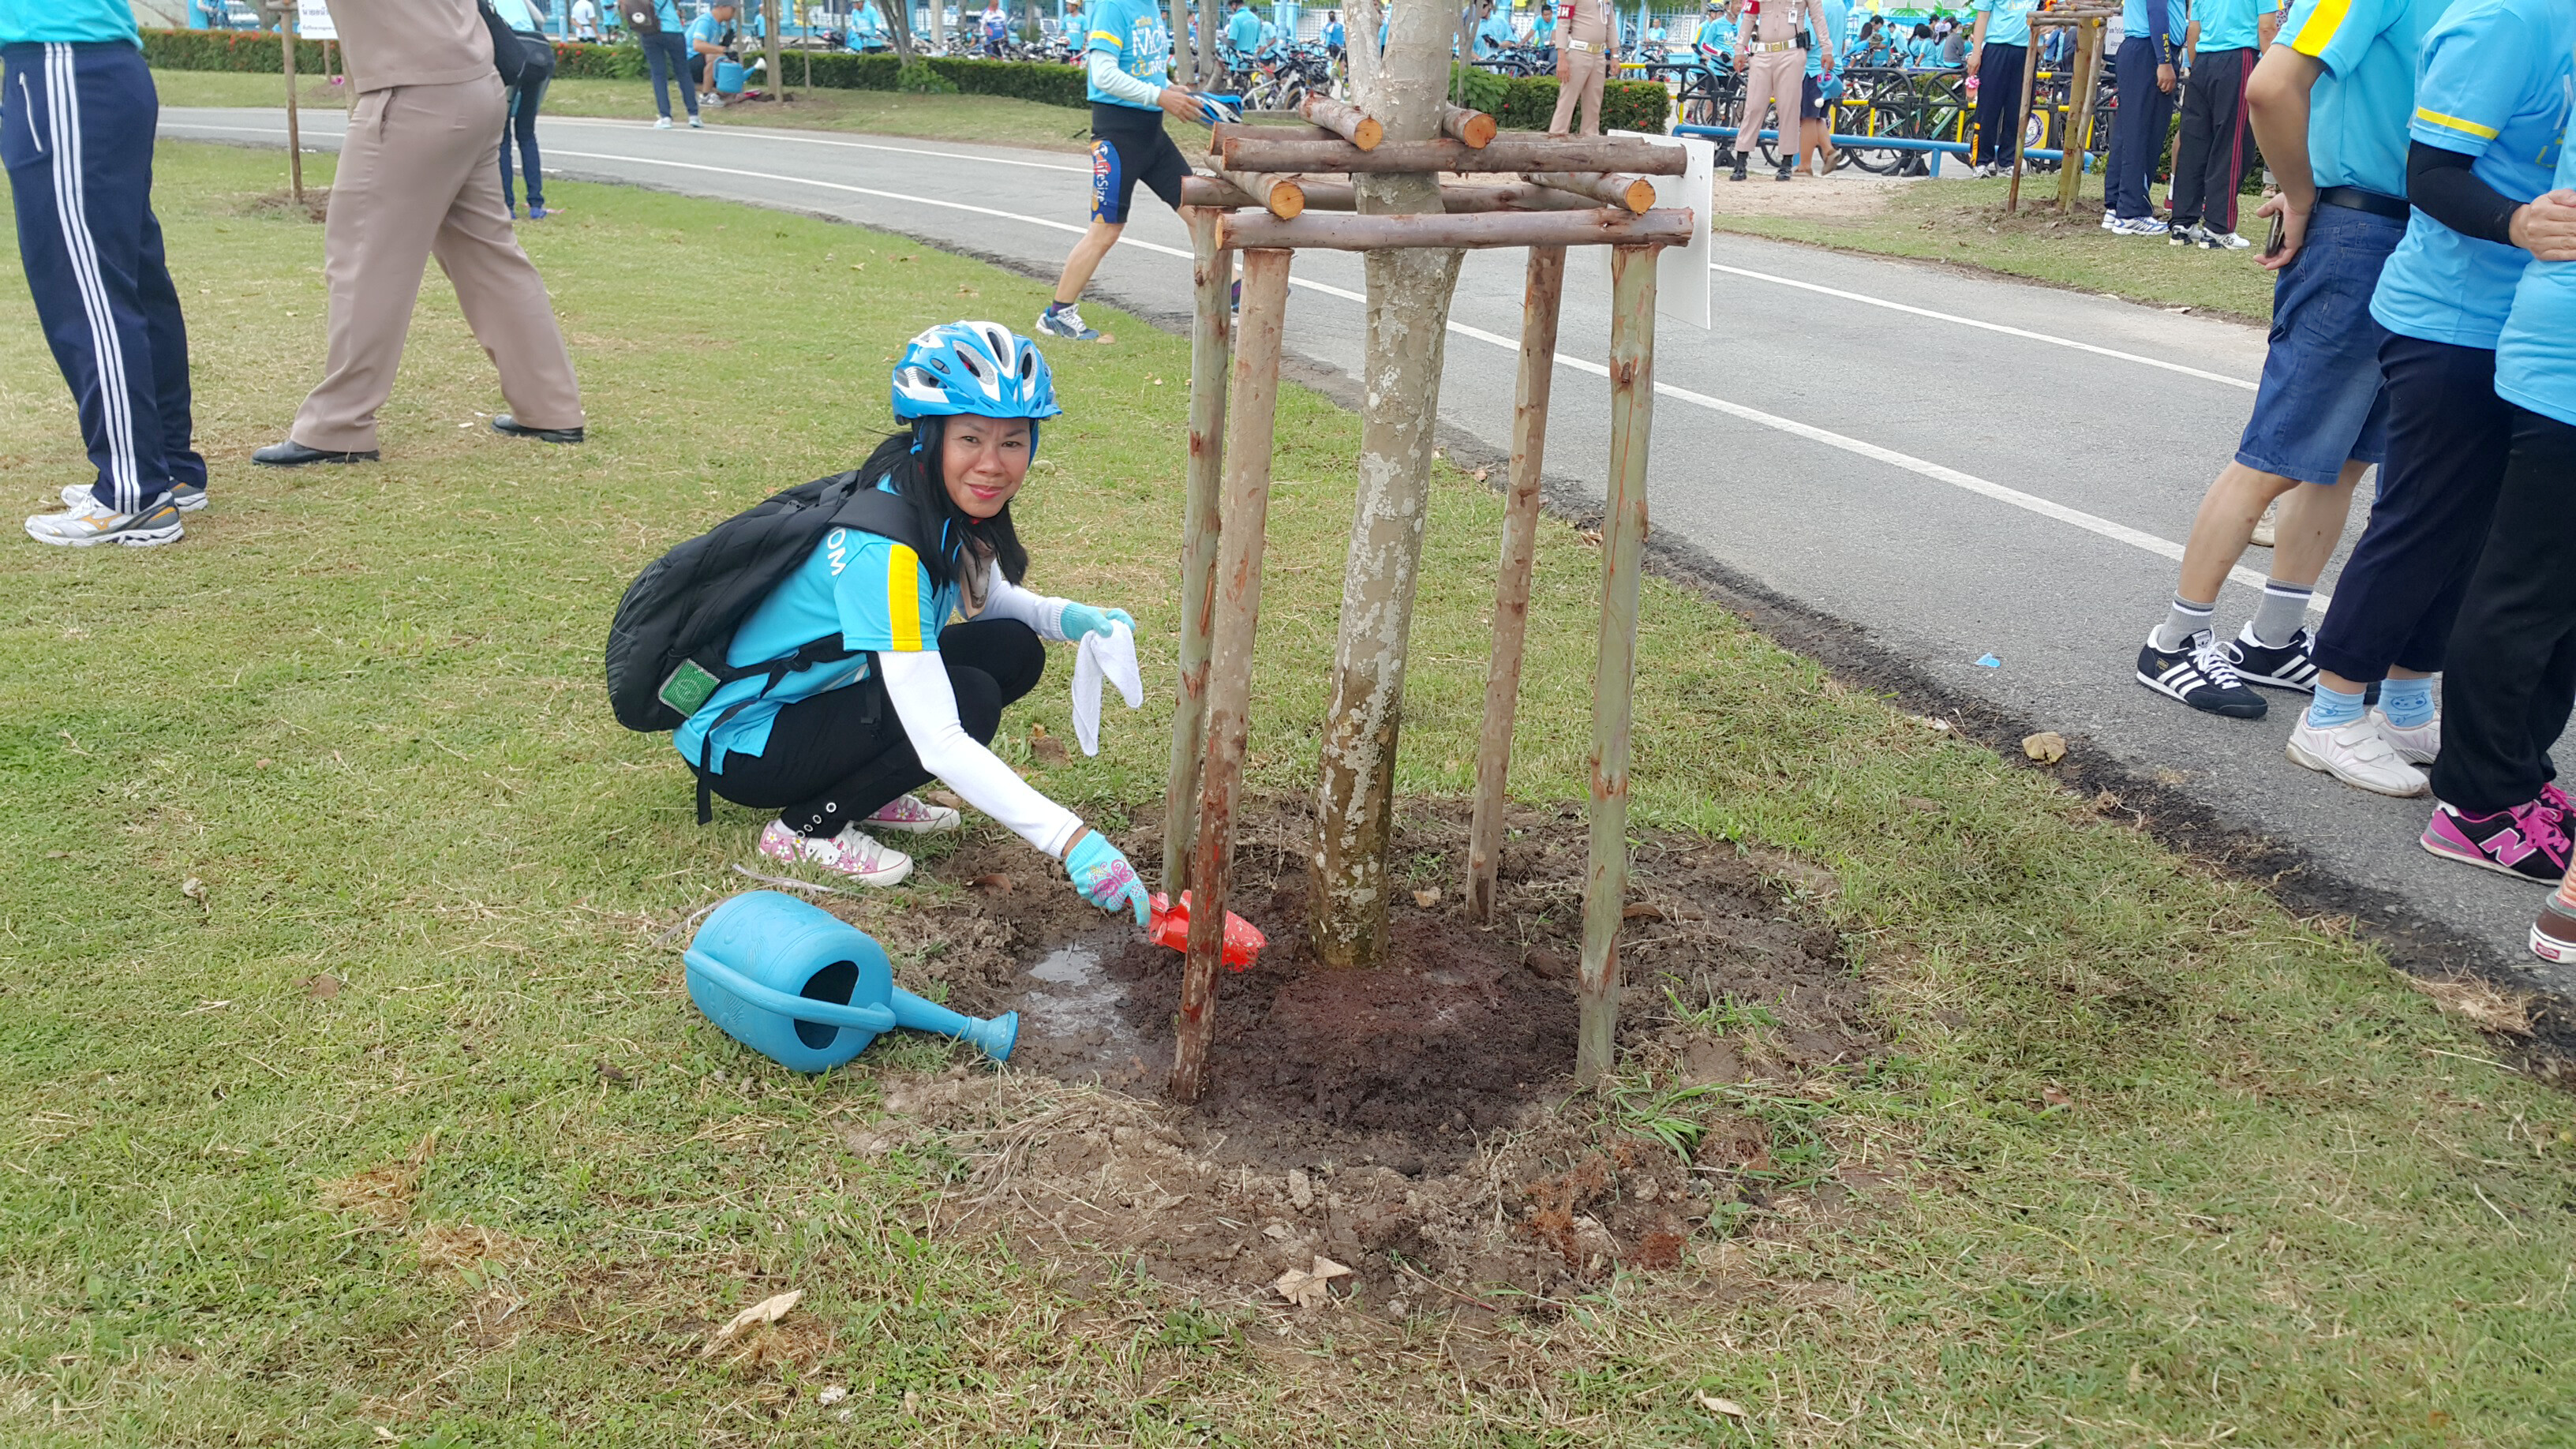 หอสมุดแห่งชาติชลบุรี ขอเชิญร่วมกิจกรรม   Bike For Mom ปั่นเพื่อแม่  ในวันอาทิตย์ที่ 16 สิงหาคม 2558